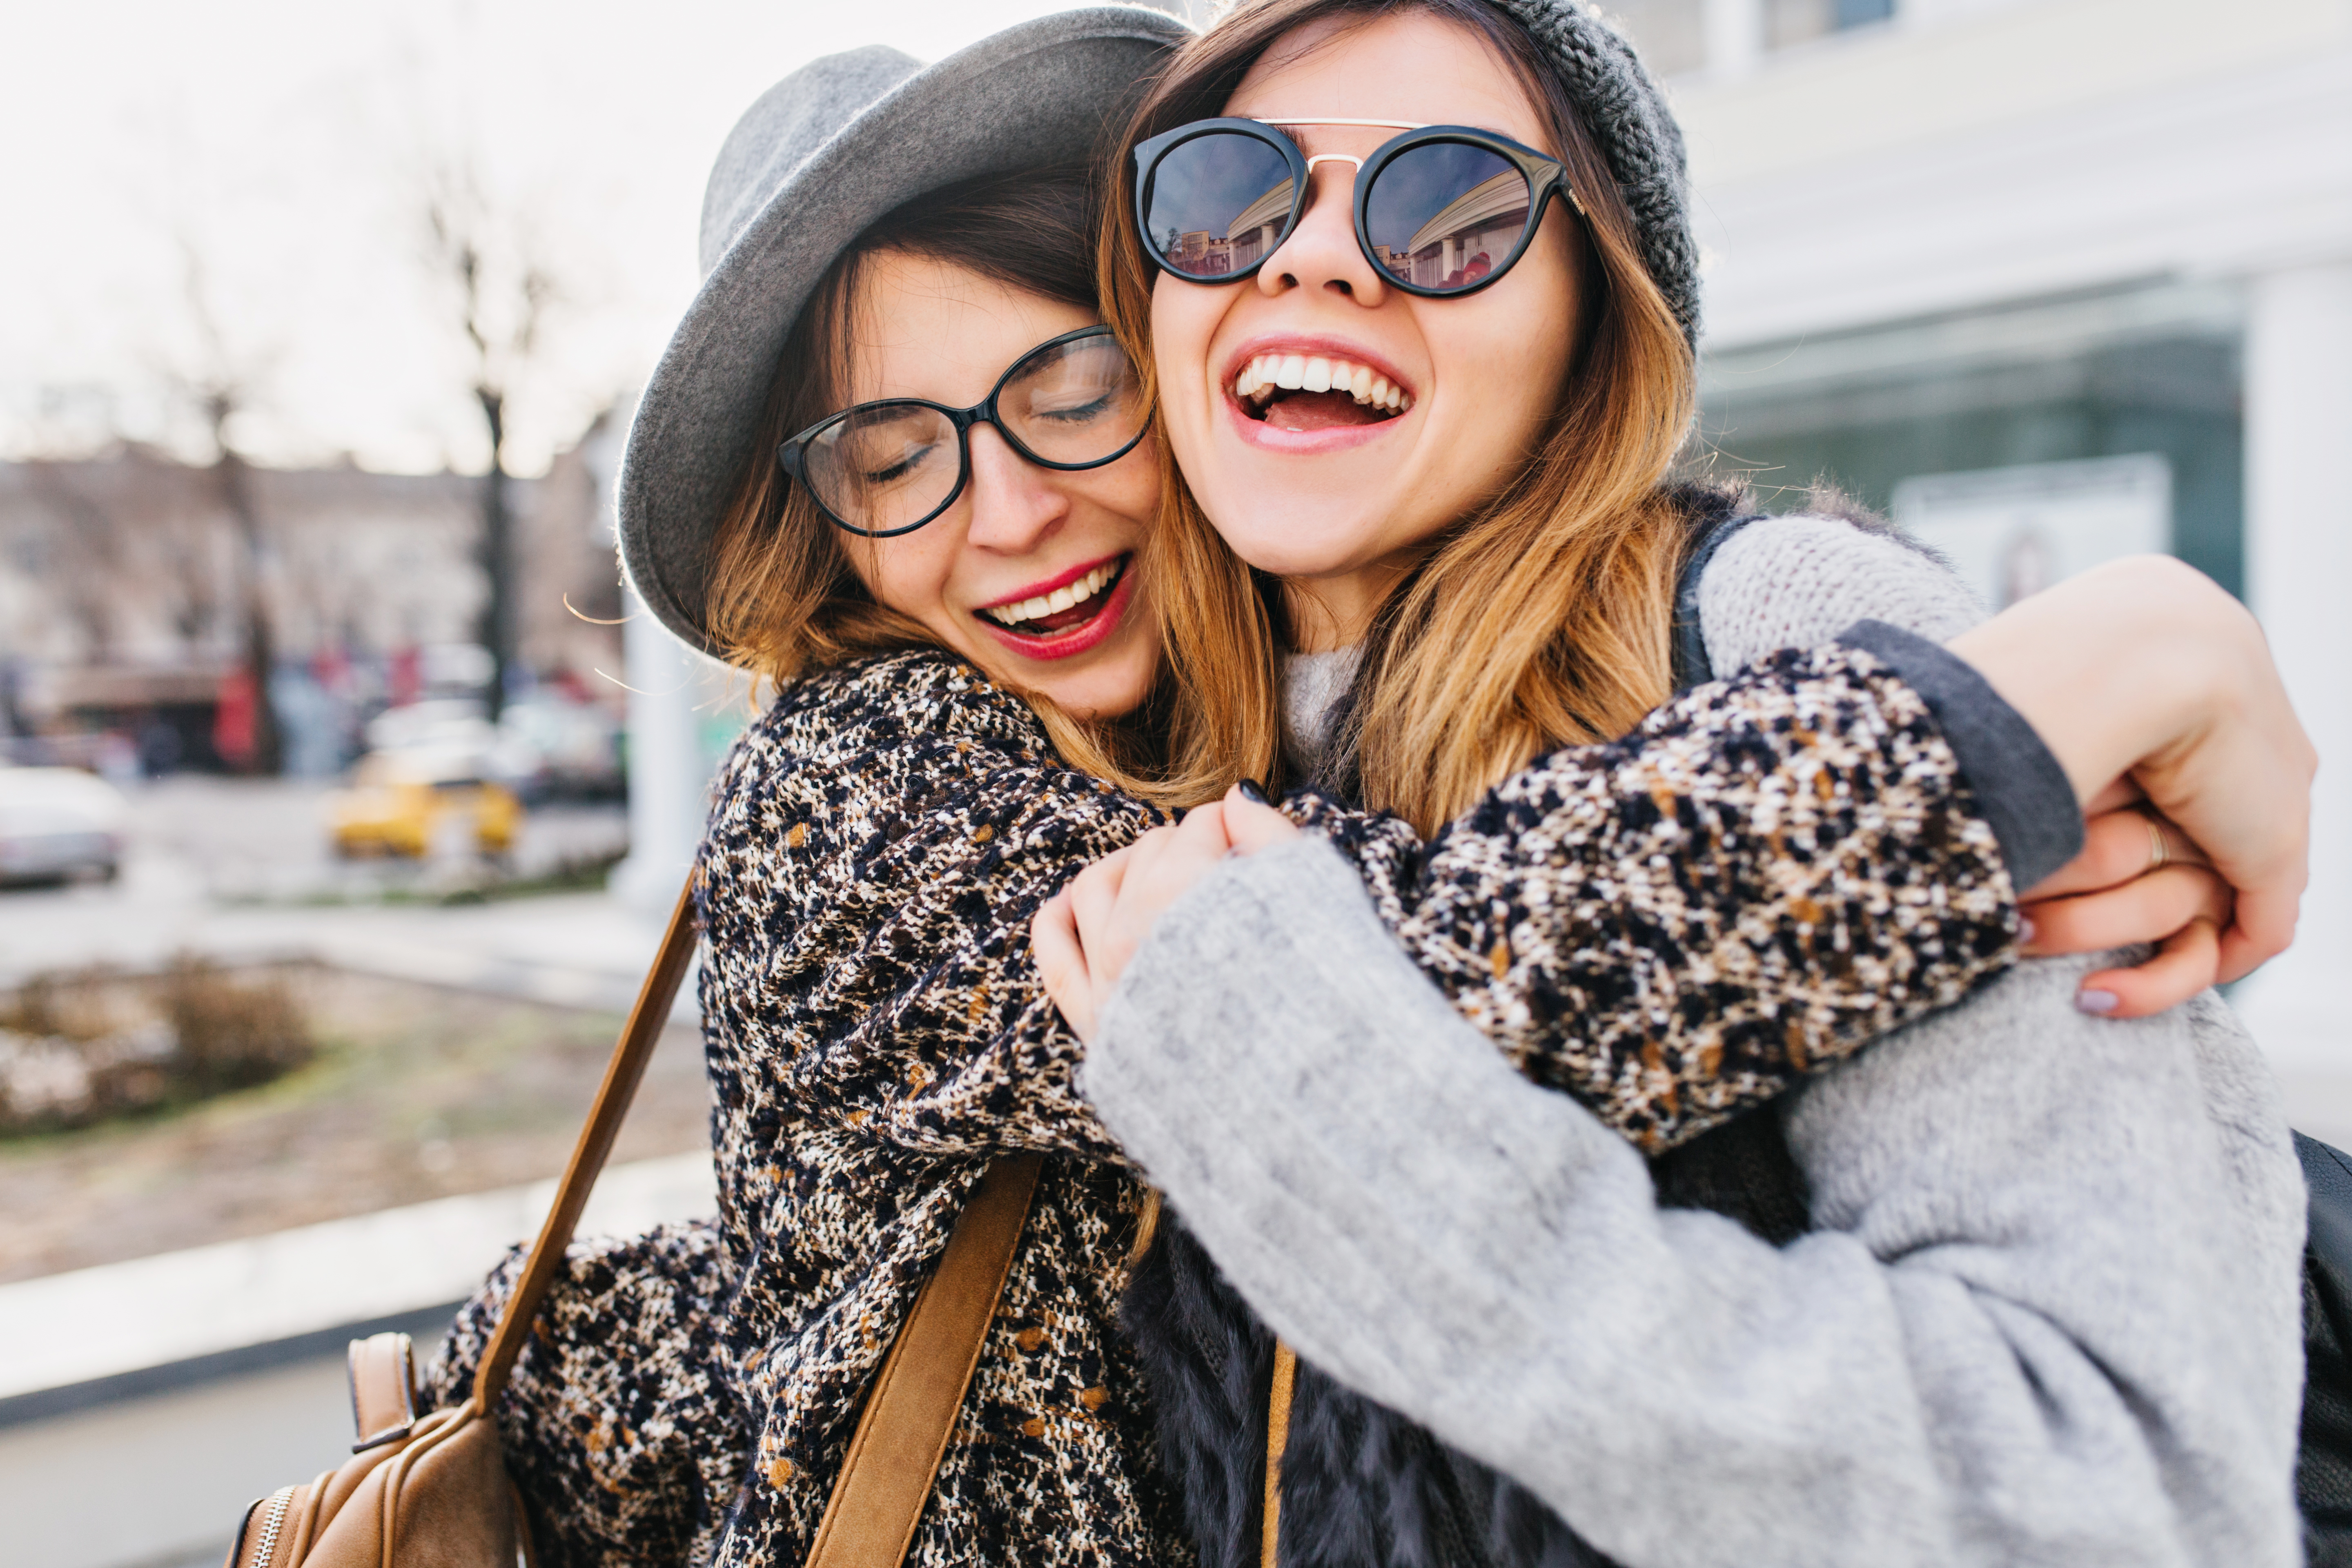 Zwei junge Frauen, die sich umarmen und lachen | Quelle: Shutterstock